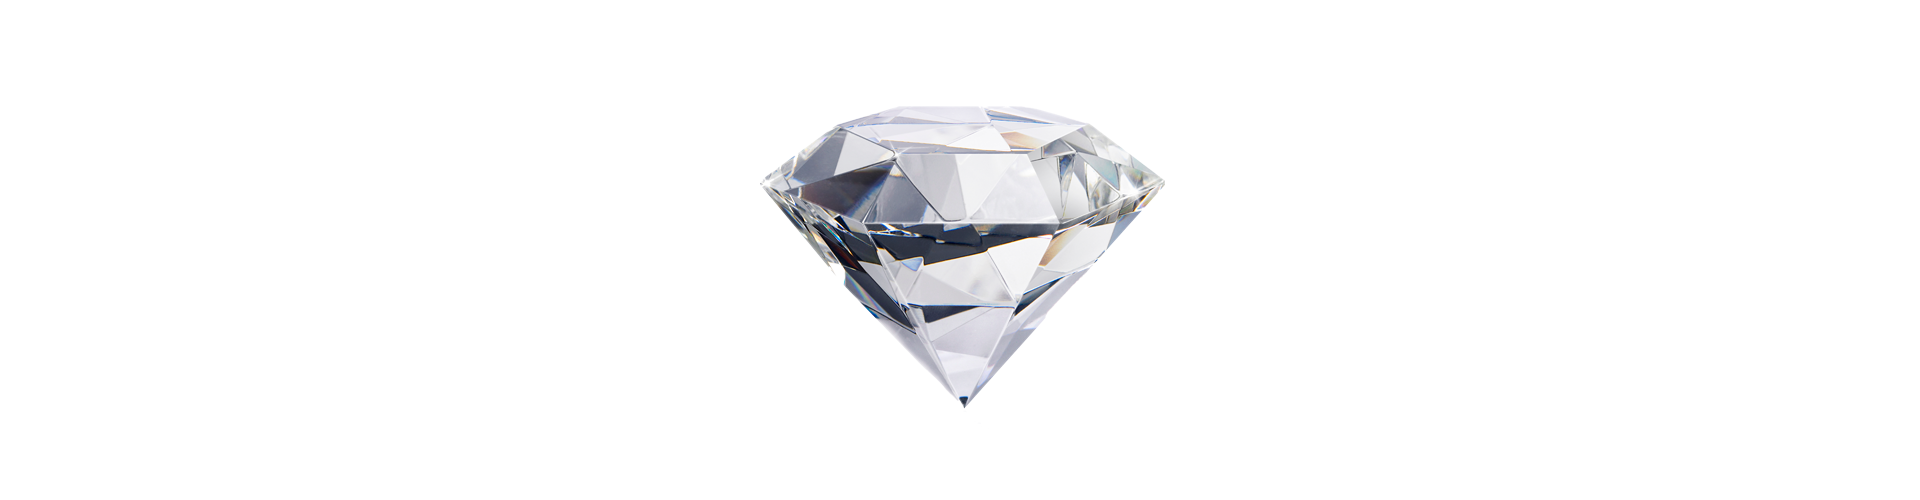 Diamanti certificati per investimento | GV